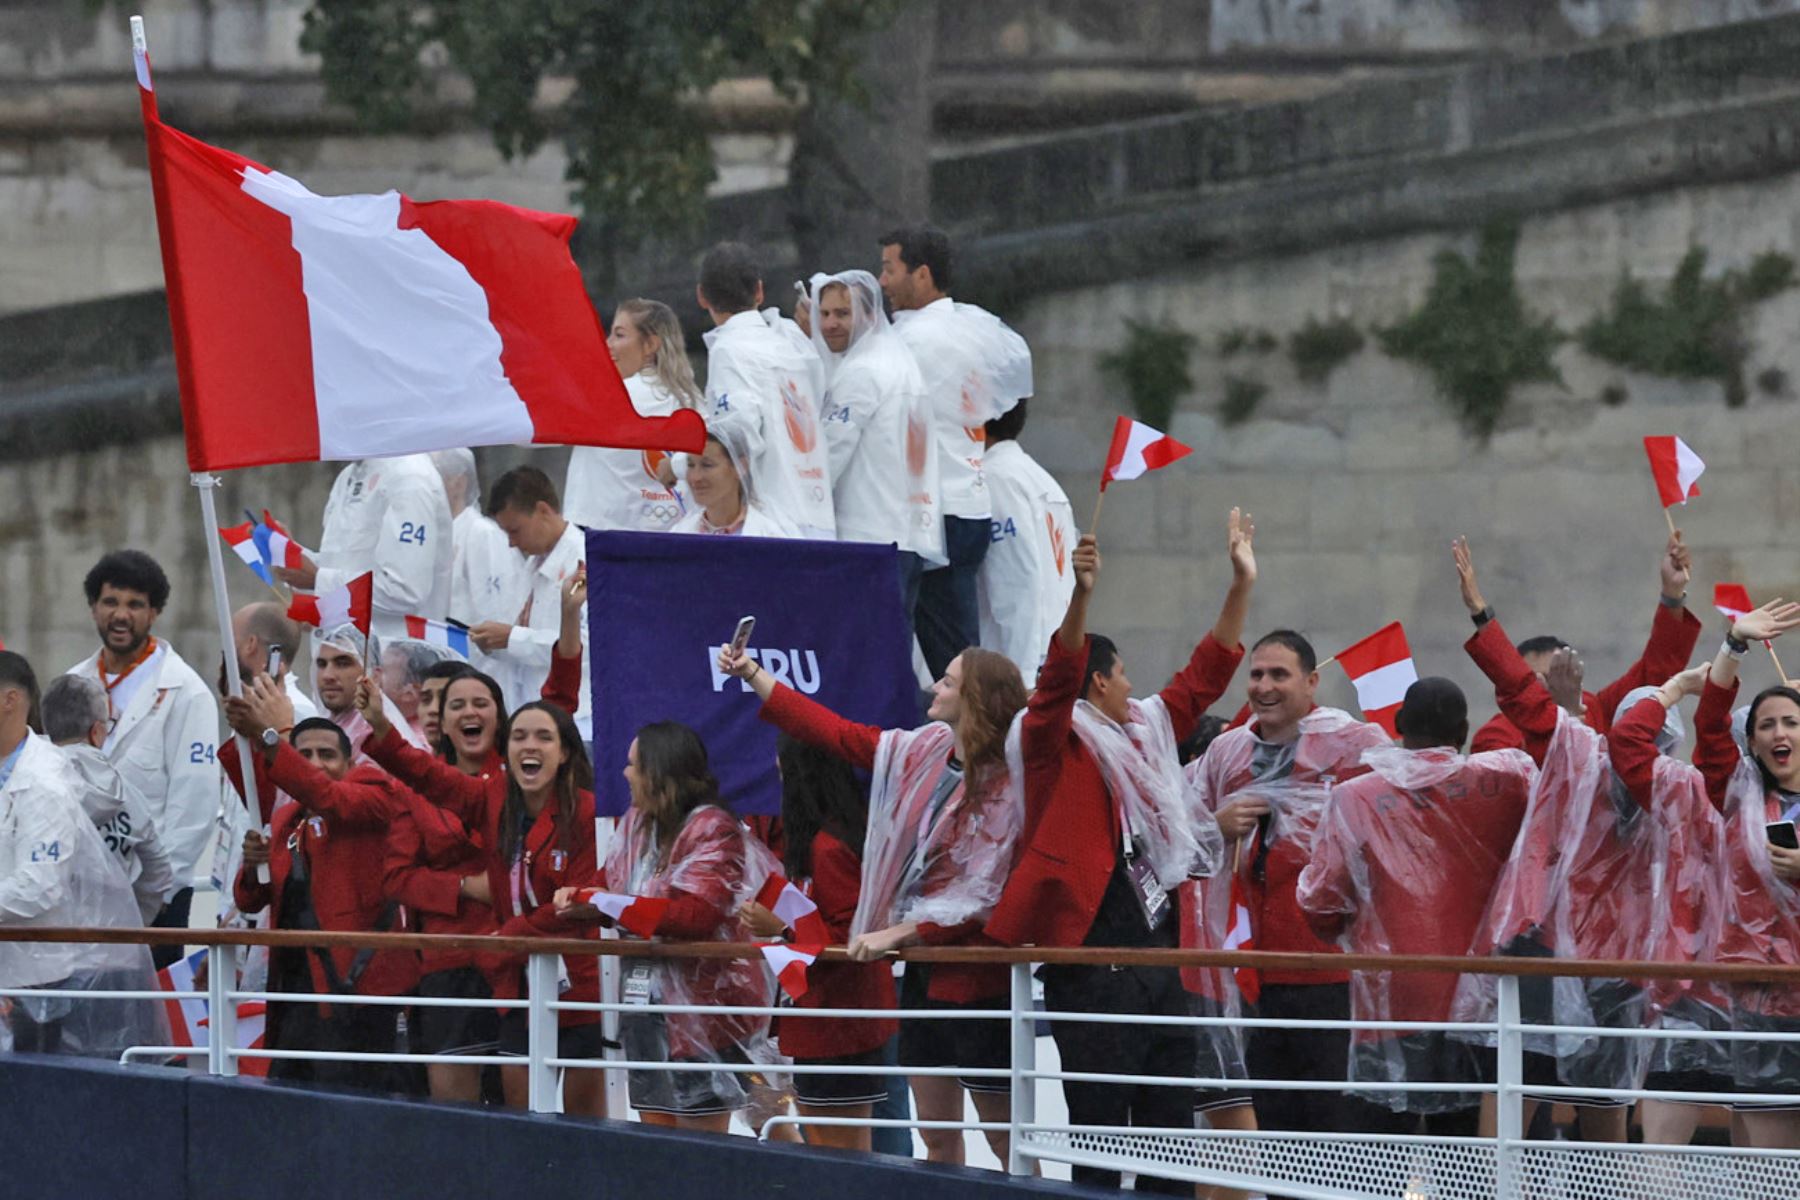 La selección de Perú desfila por el río Sena, durante la ceremonia de inauguración de los Juegos Olímpicos de París 2024, este viernes en la capital francesa. Foto: EFE